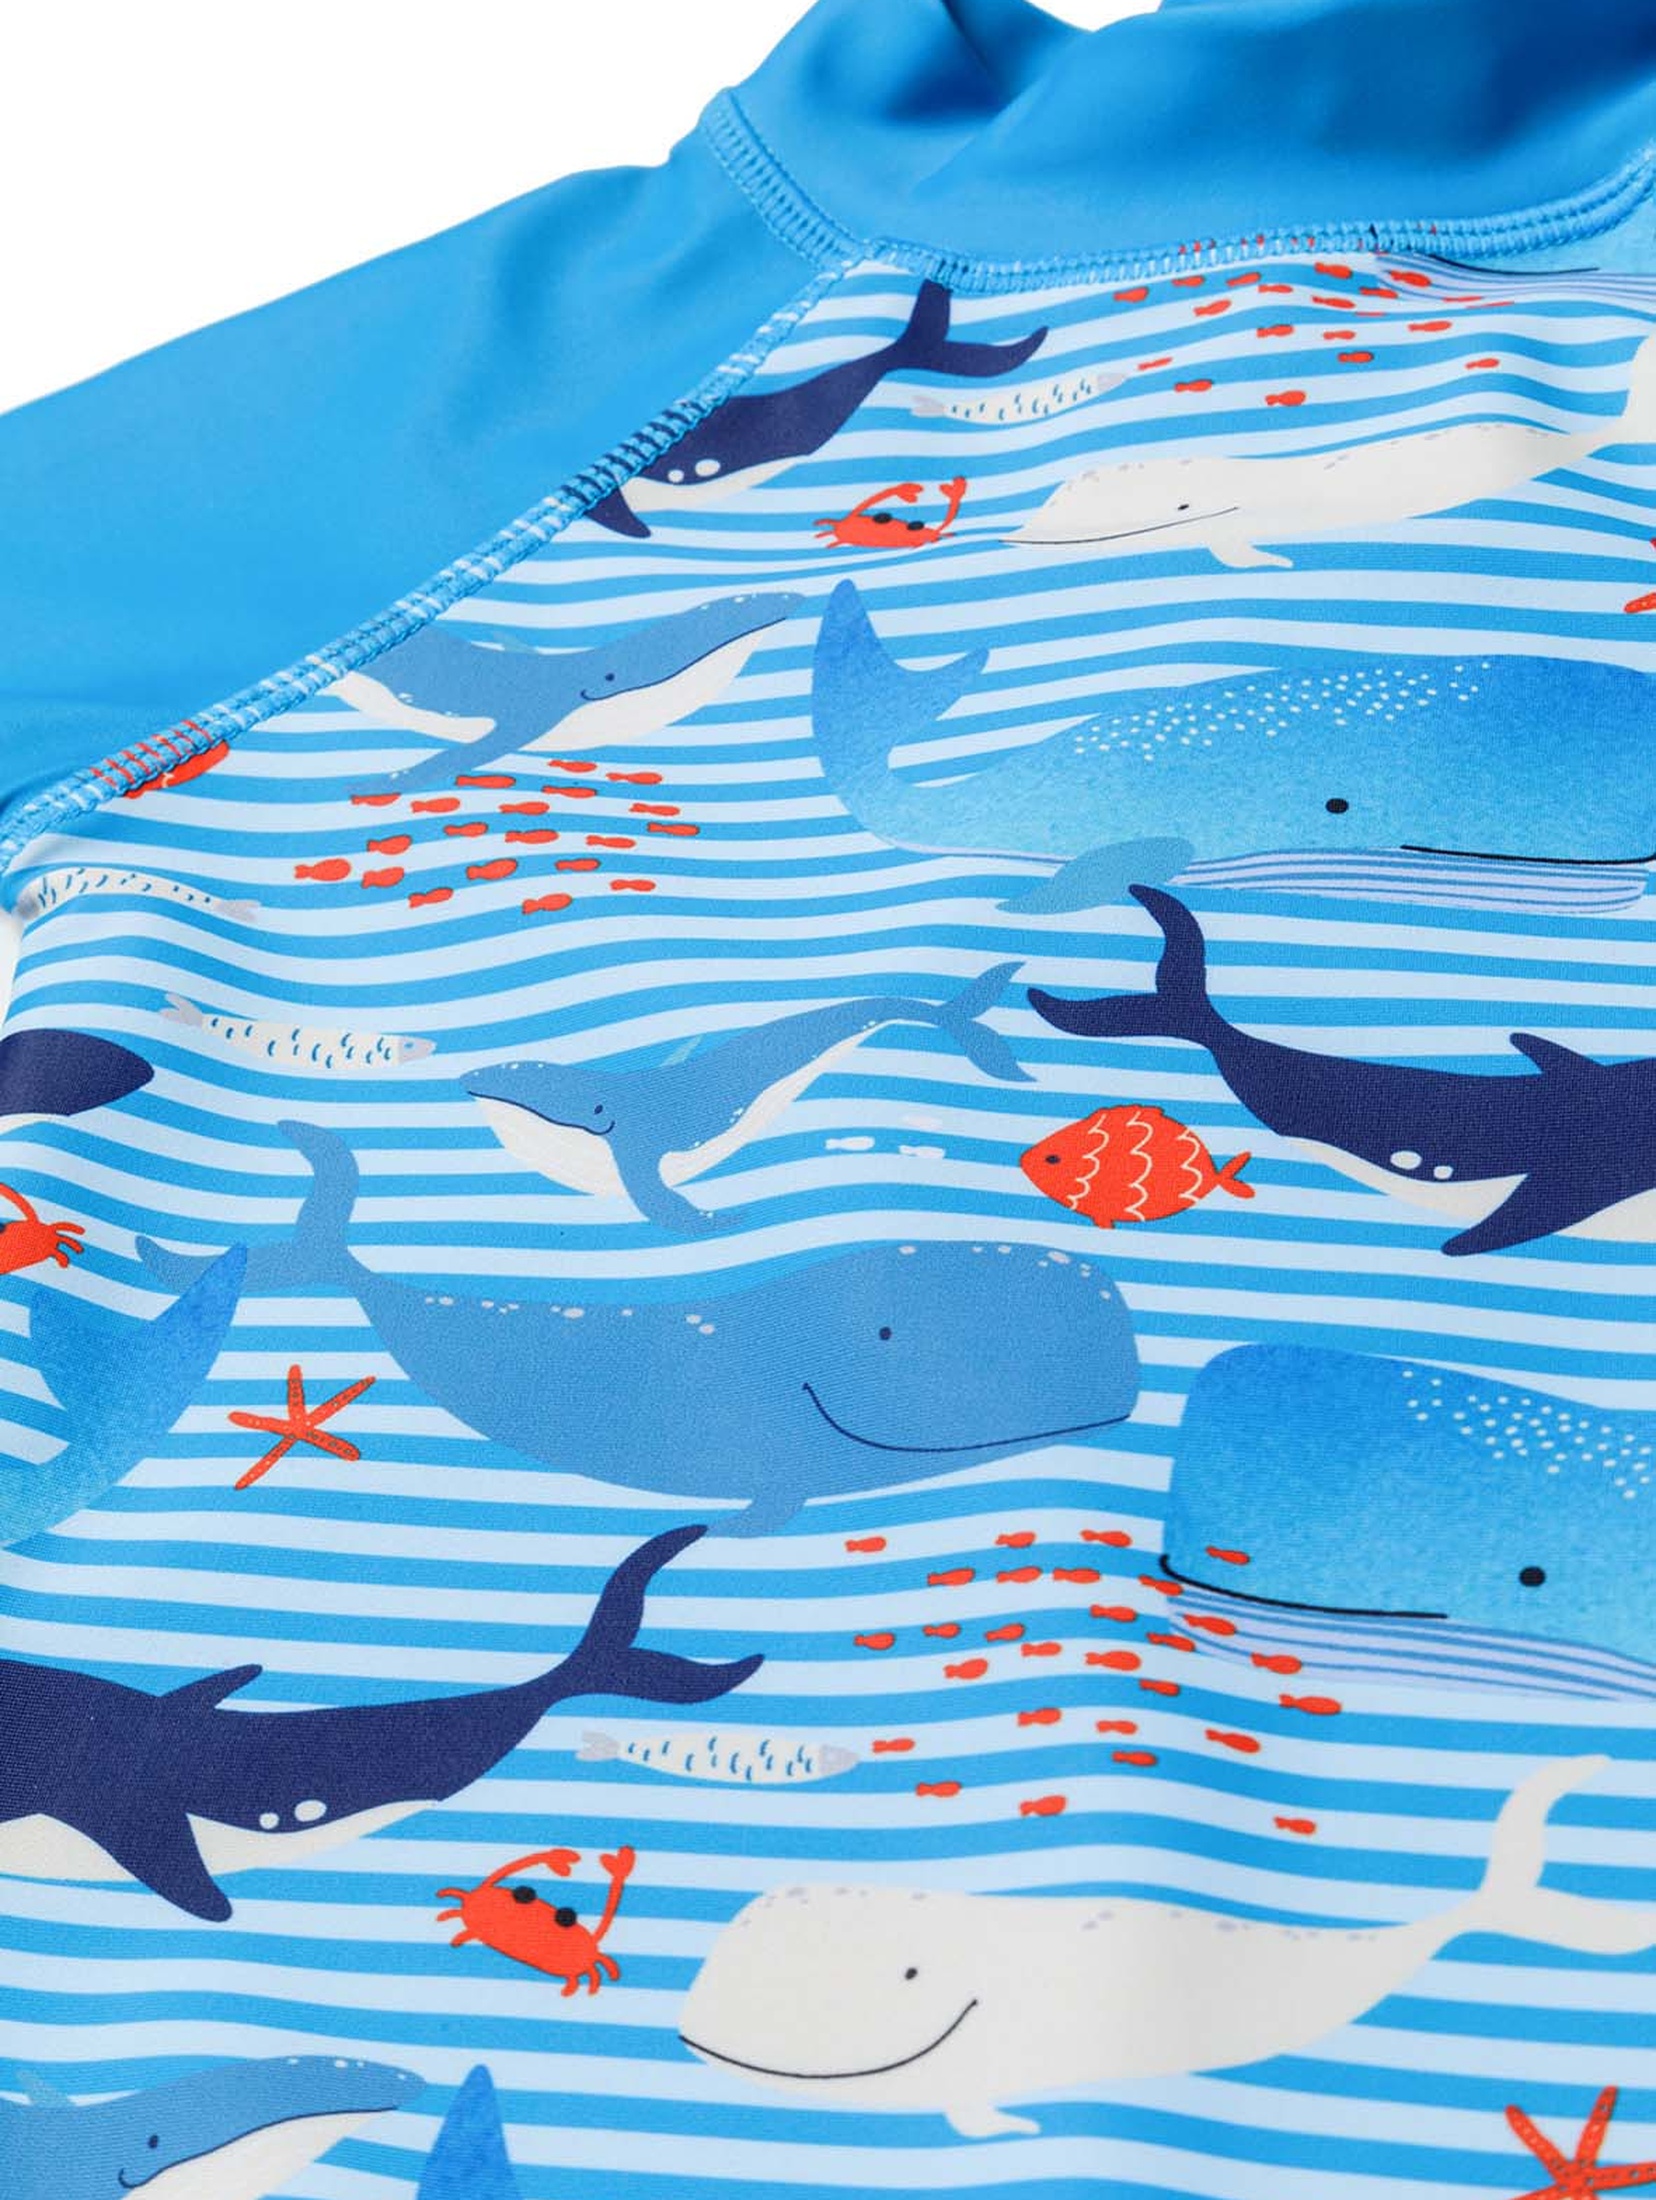 Niebieski kombinezon kąpielowy z filtrem UV i czapką- wieloryby